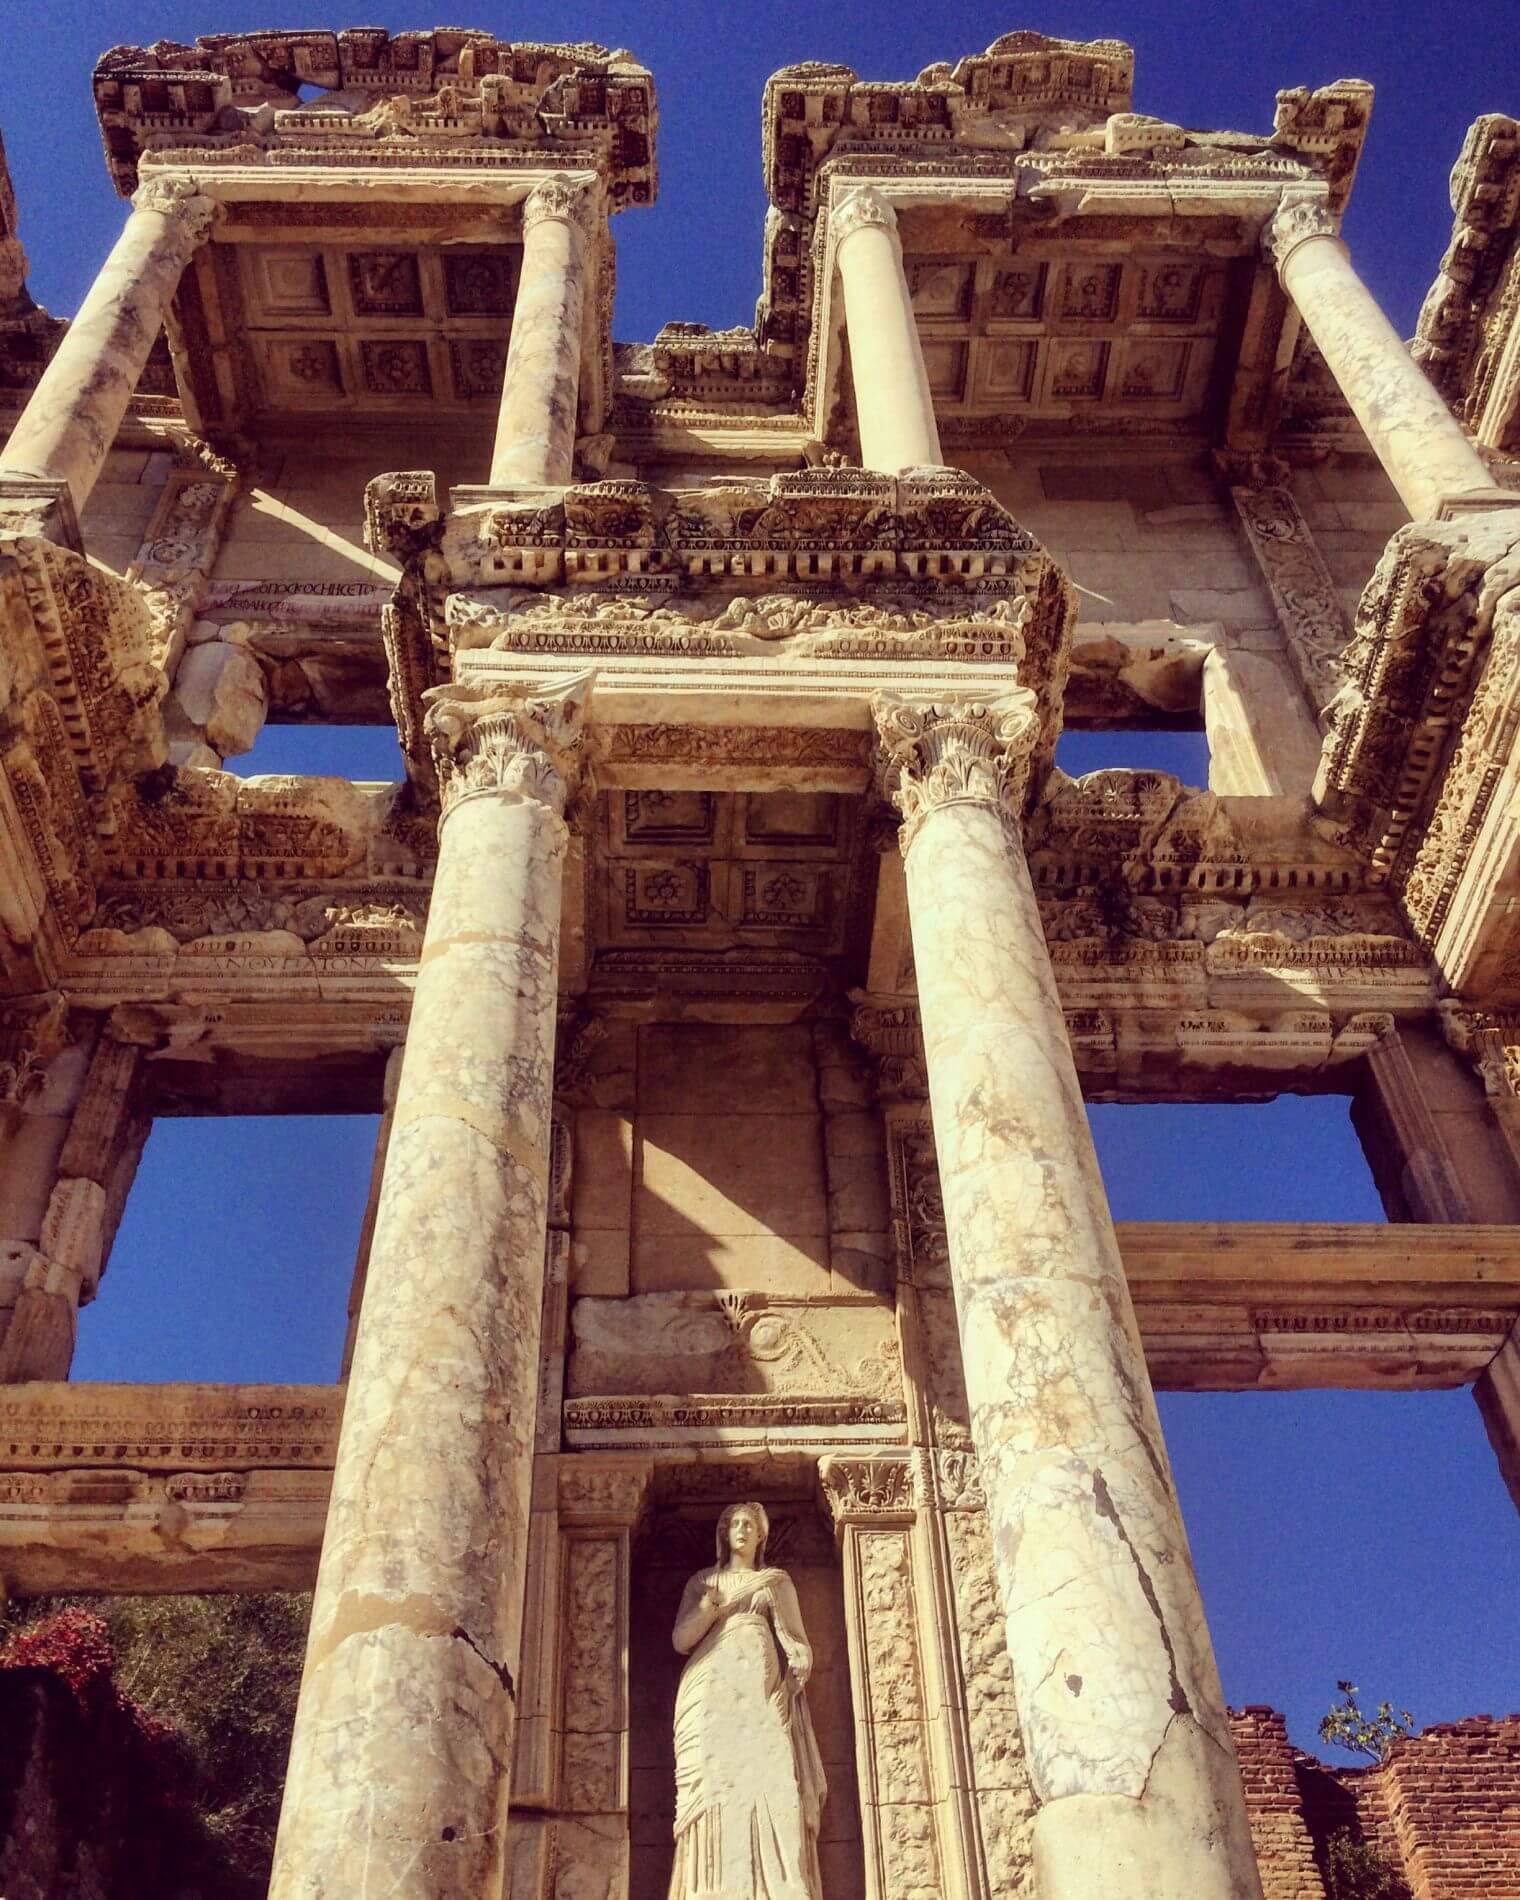 Biblical Private Ephesus Tour